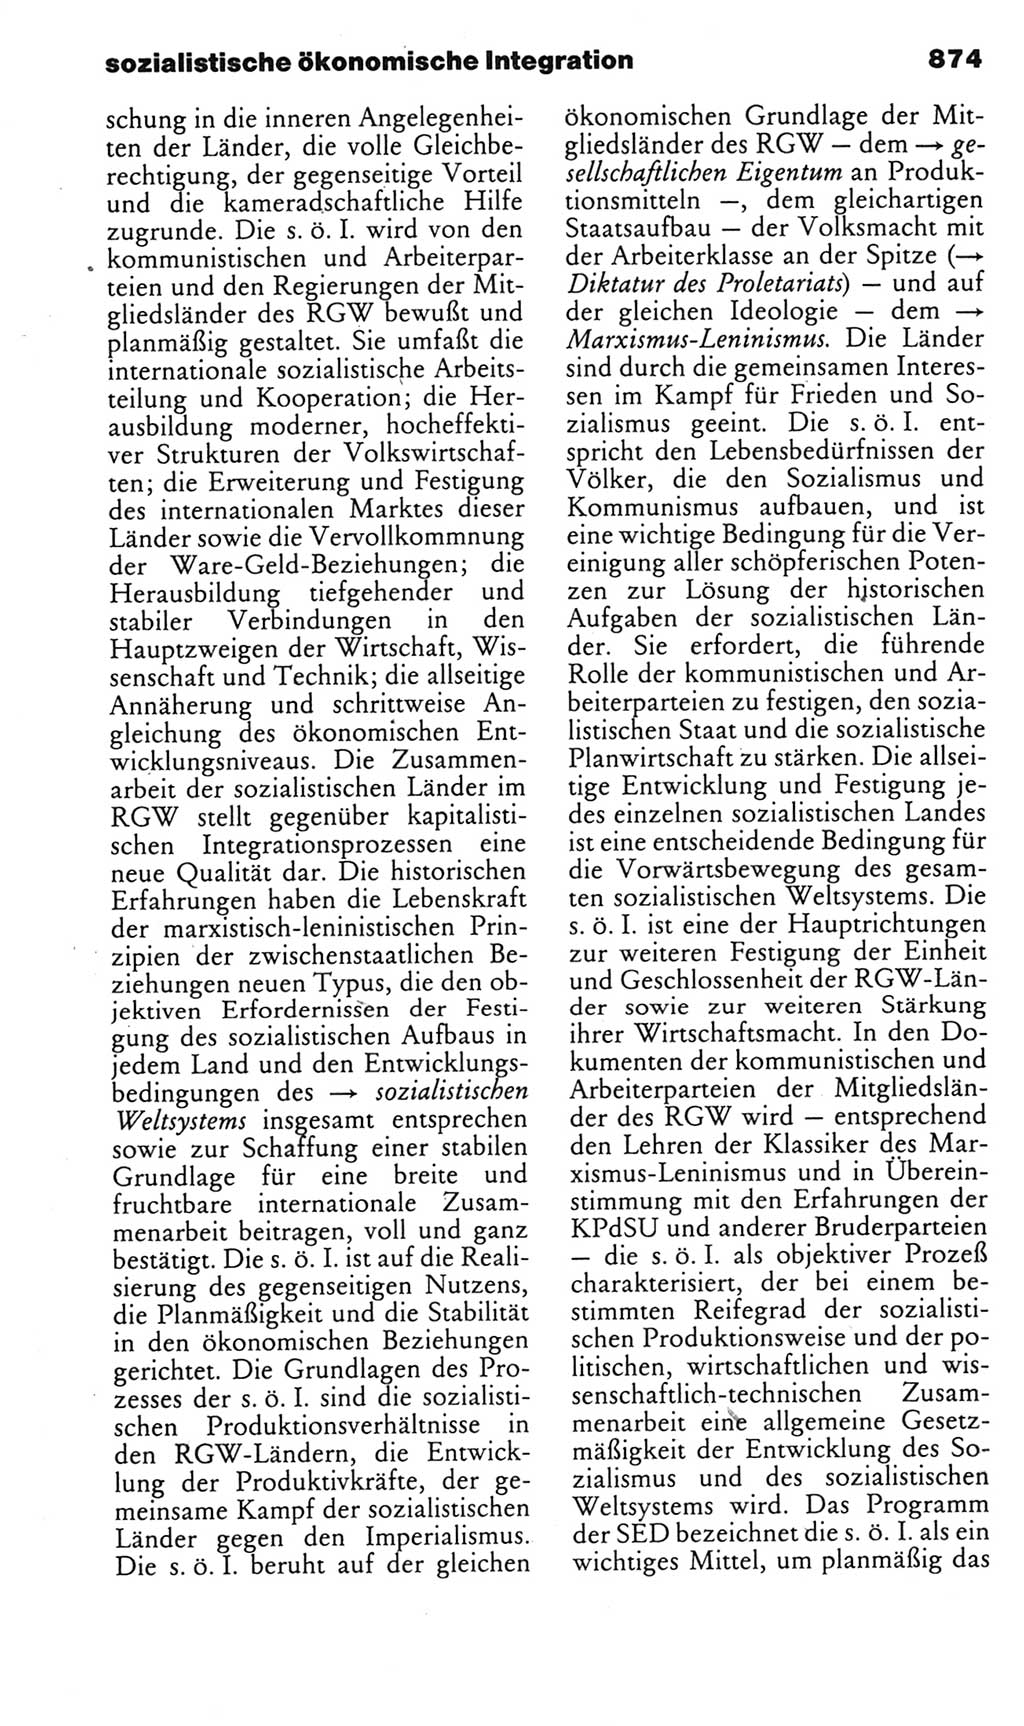 Kleines politisches Wörterbuch [Deutsche Demokratische Republik (DDR)] 1985, Seite 874 (Kl. pol. Wb. DDR 1985, S. 874)